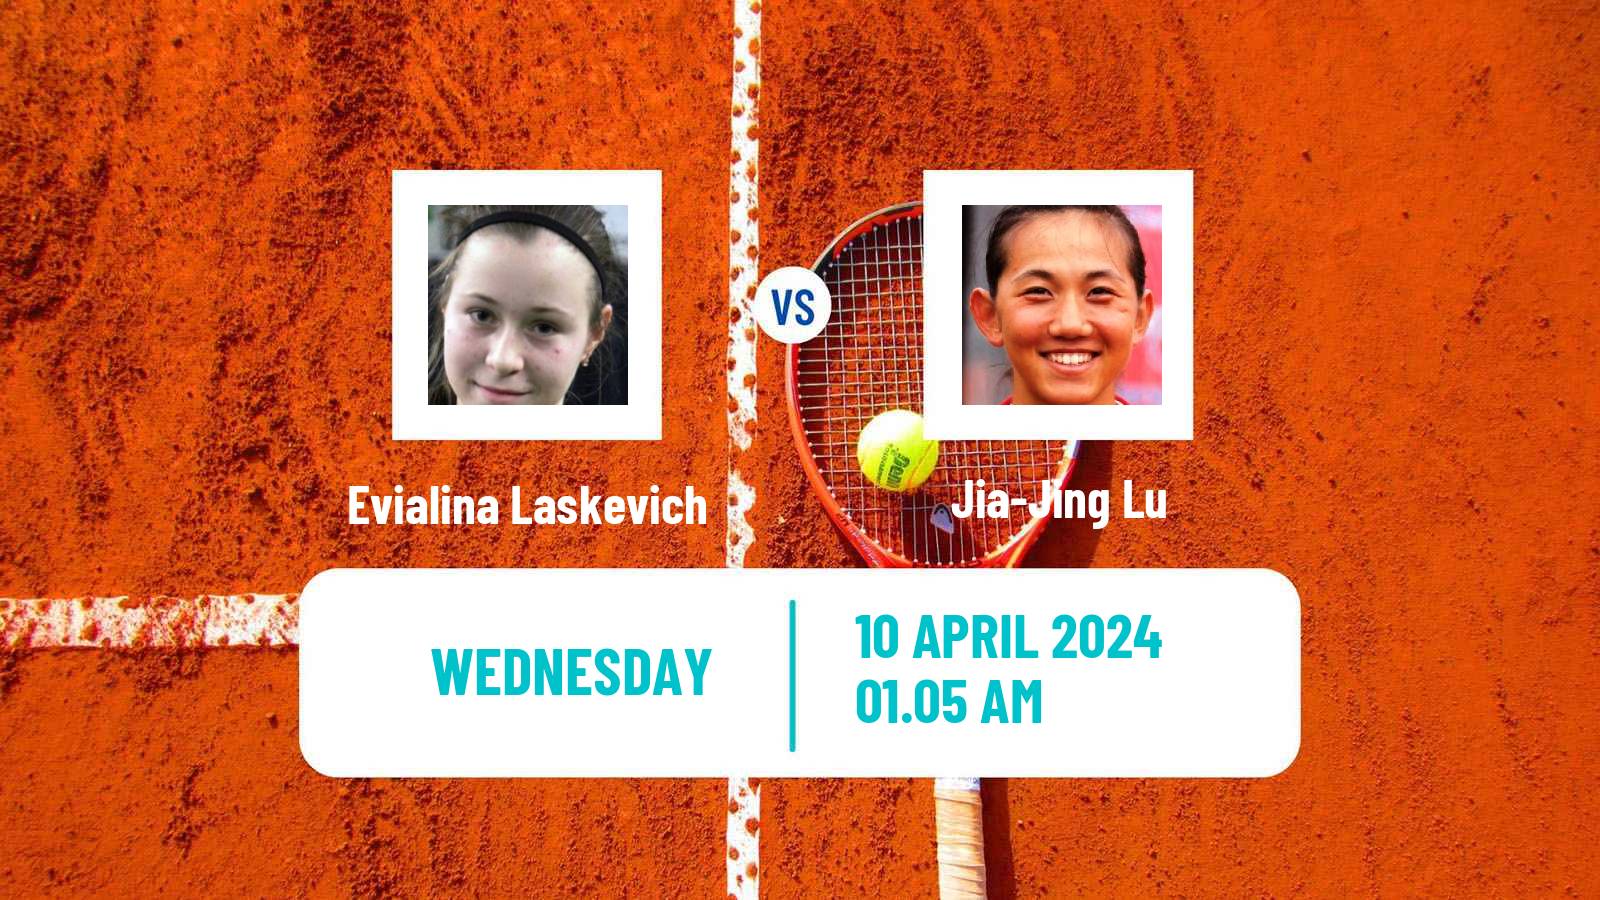 Tennis ITF W50 Shenzhen Women Evialina Laskevich - Jia-Jing Lu